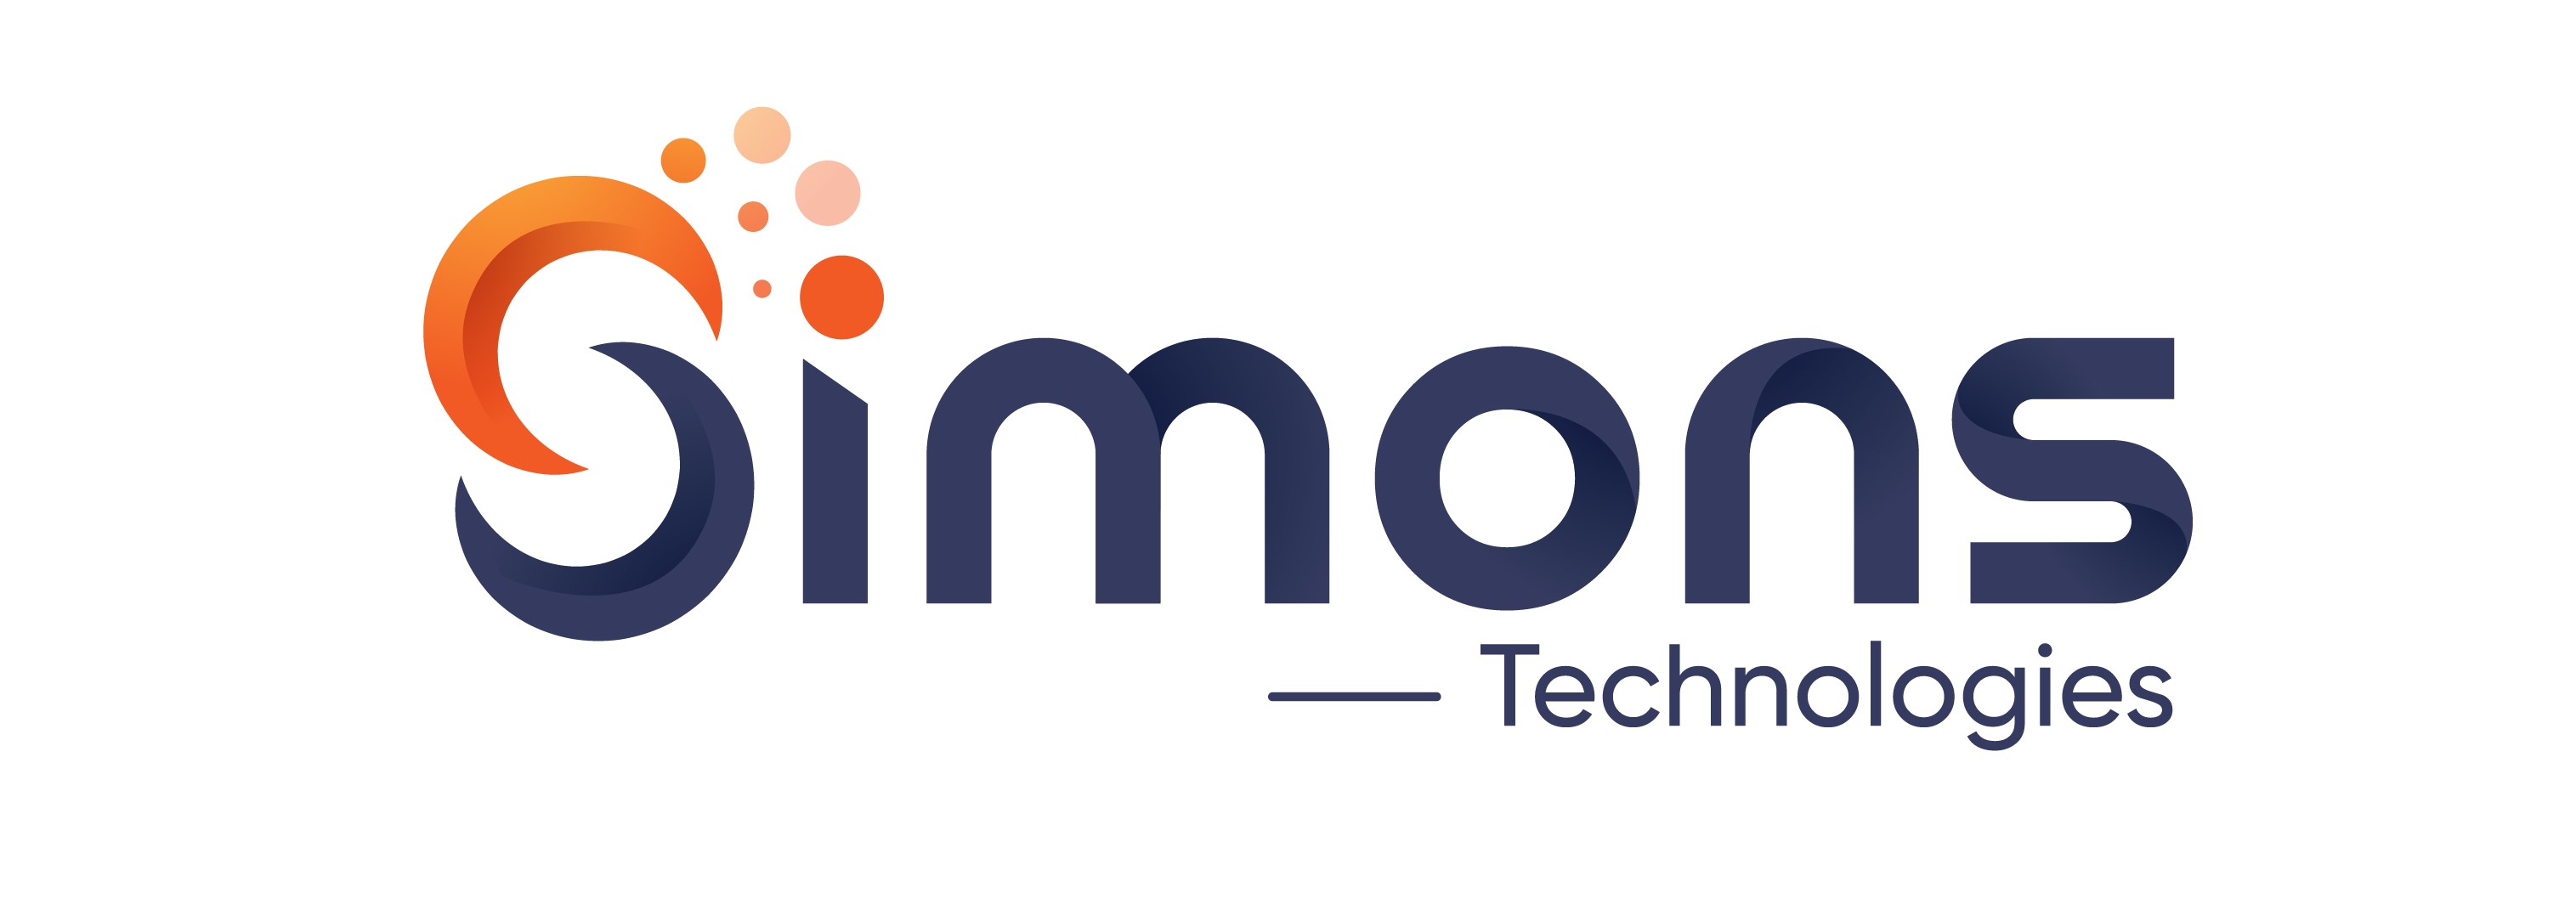 Simons Technologies